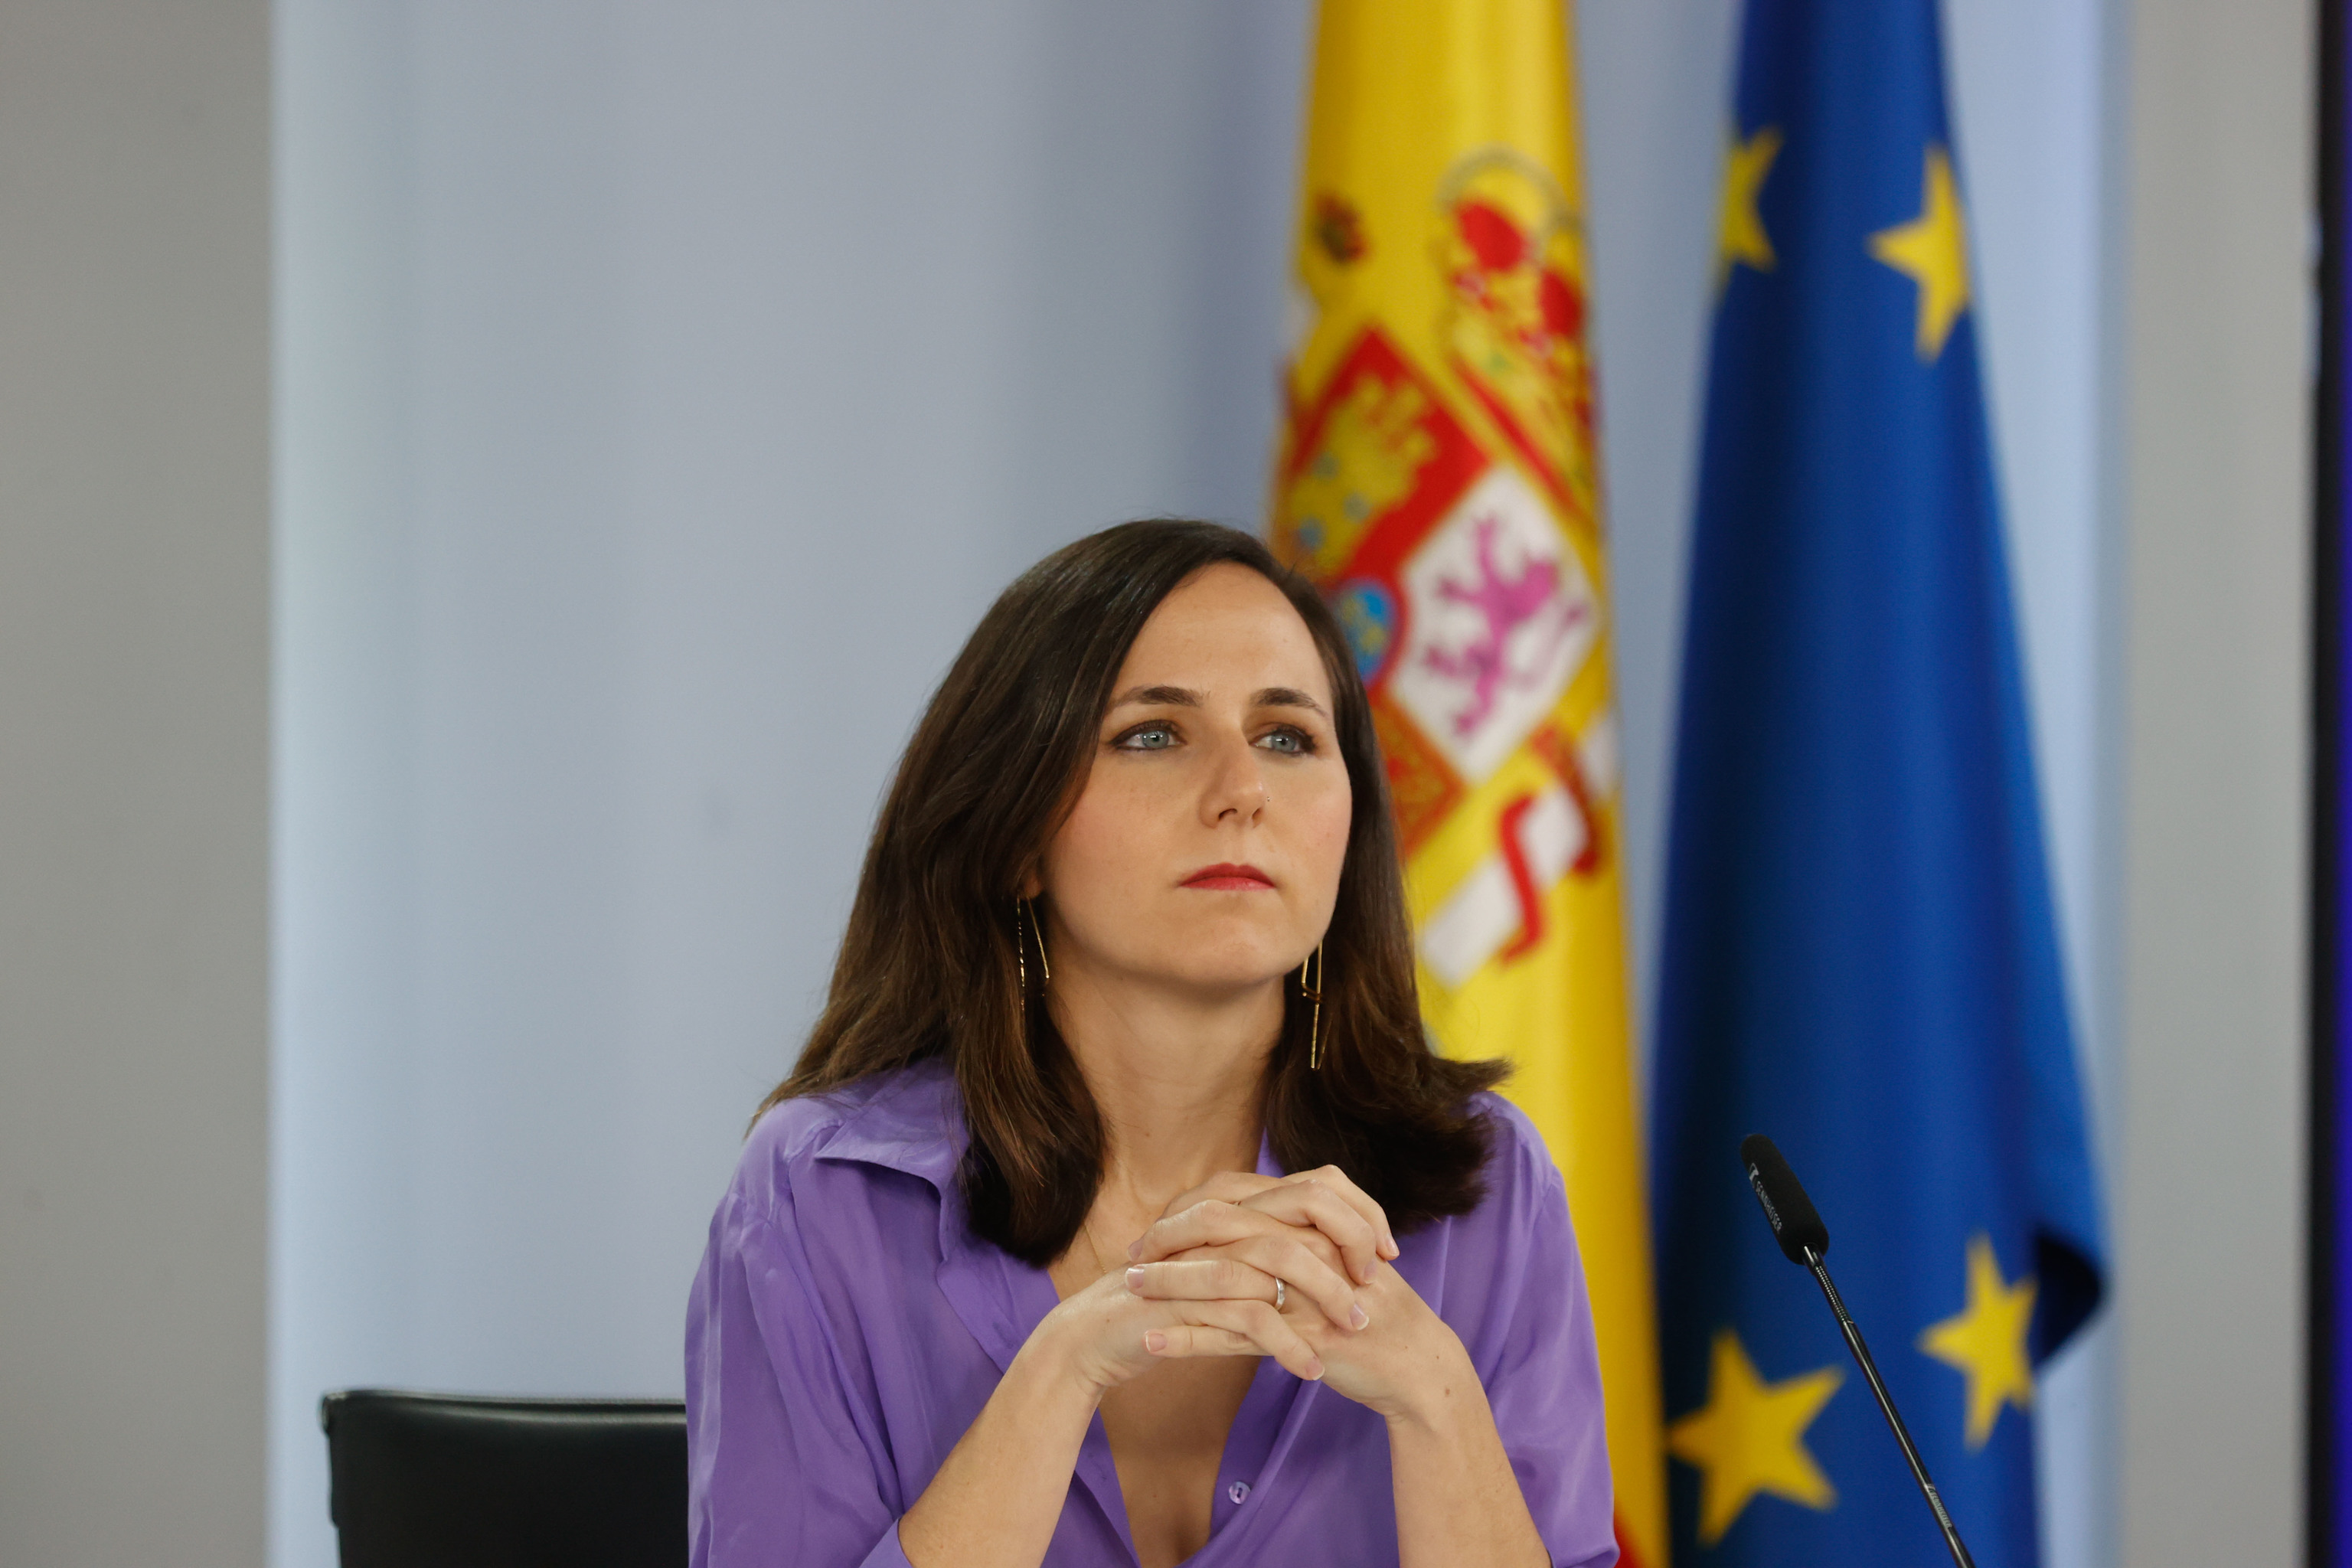 La ministra de Derechos Sociales y Agenda 2030, Ione Belarra.